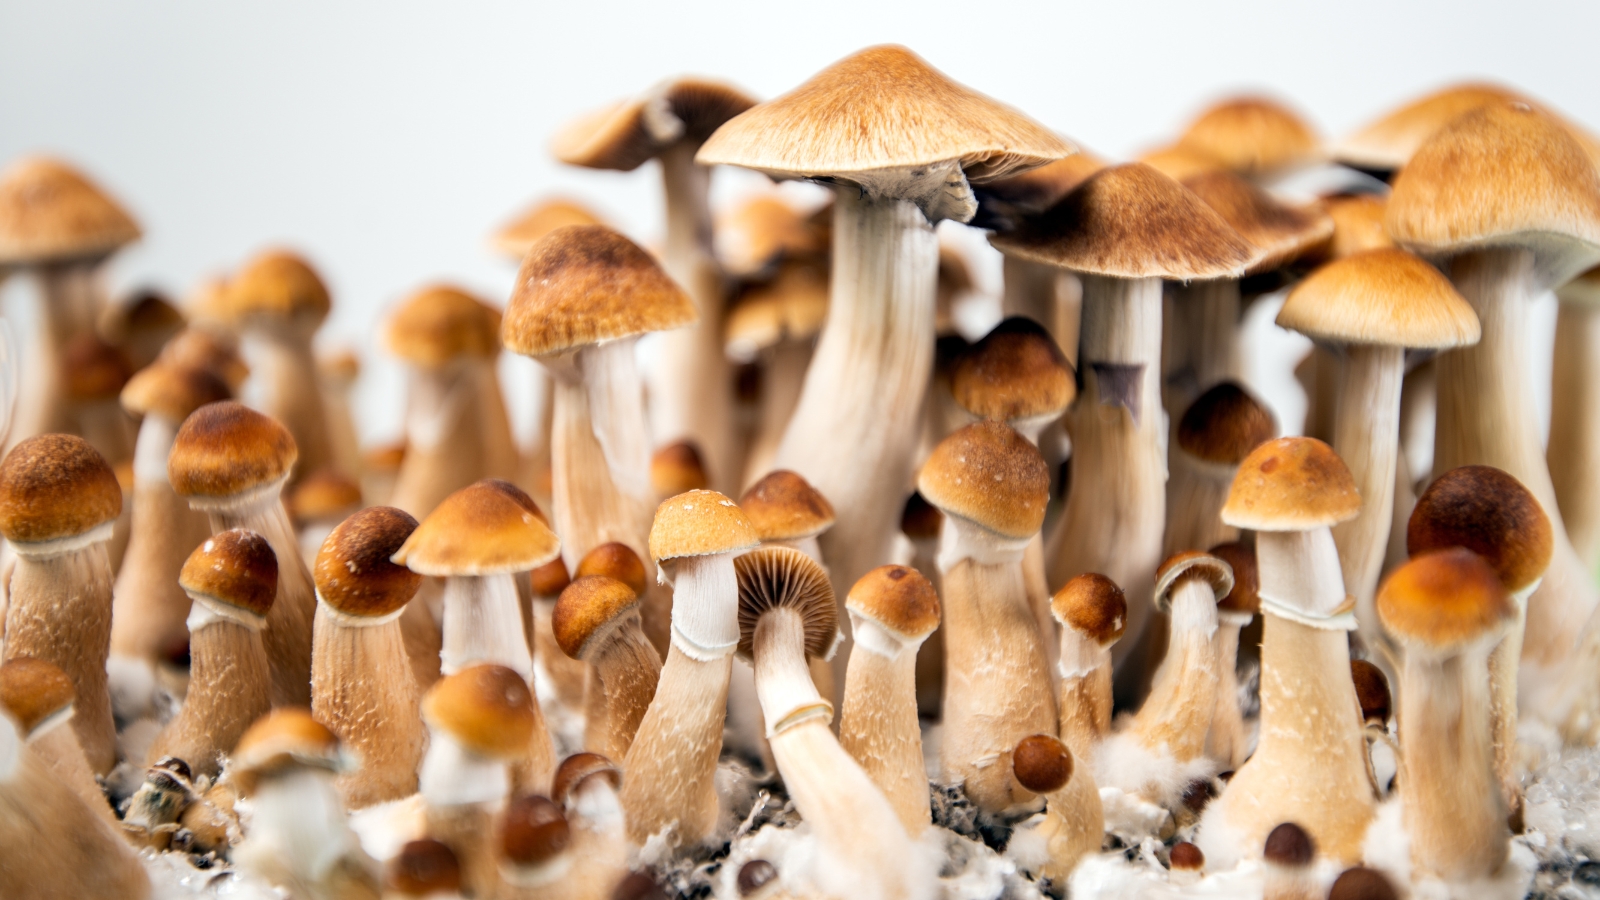 Mushrooms in cambodia